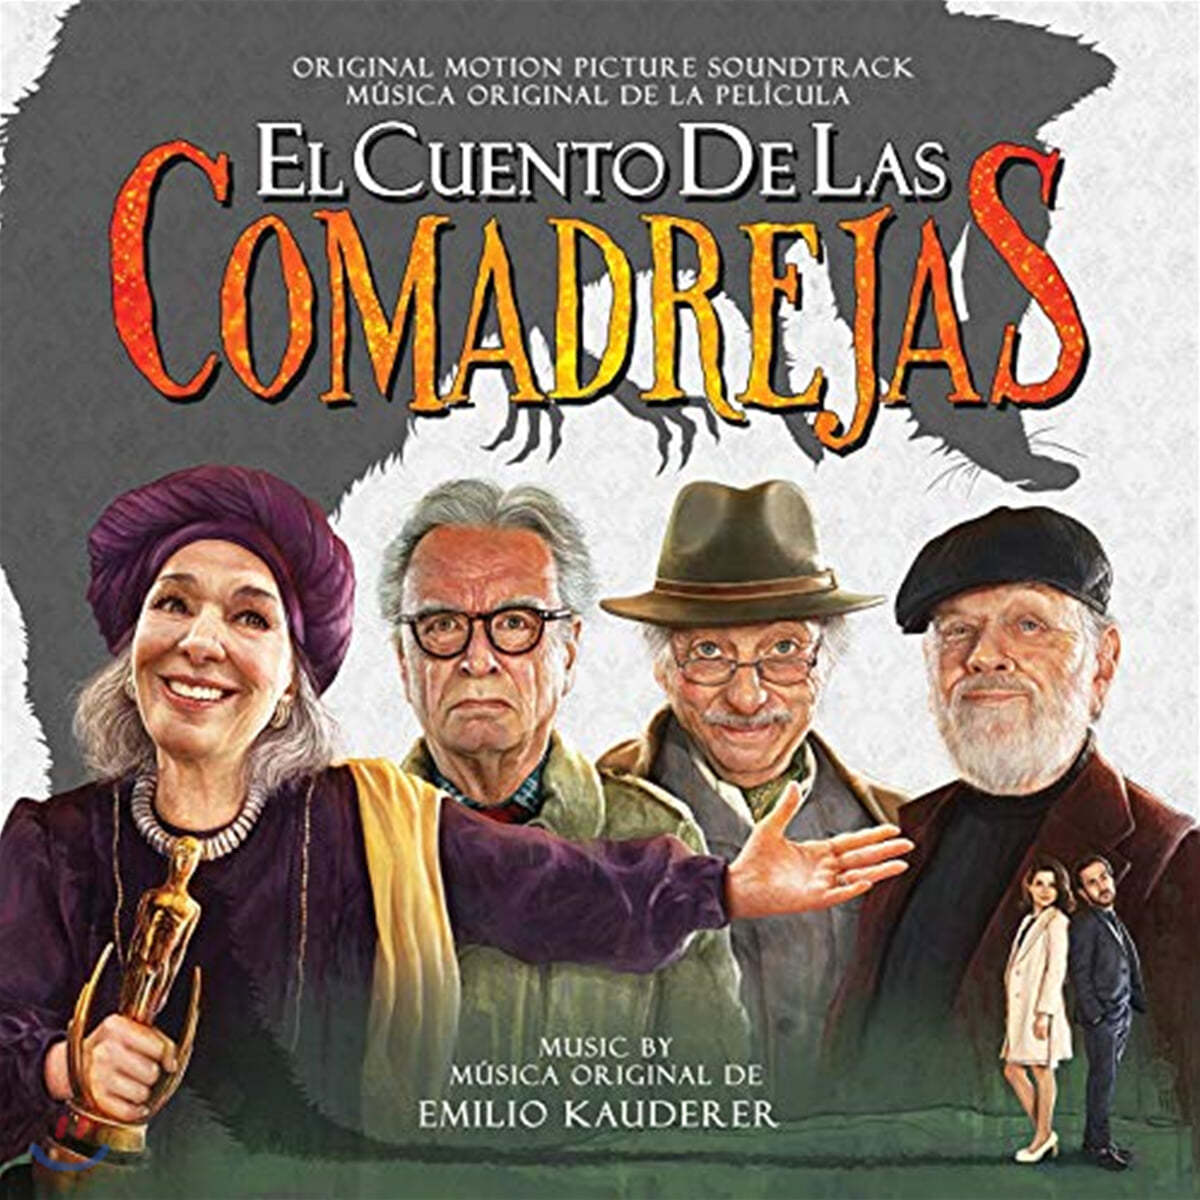 El Cuento de las Comadrejas (The Weasels’ Tale OST by Emilio Kauderer)